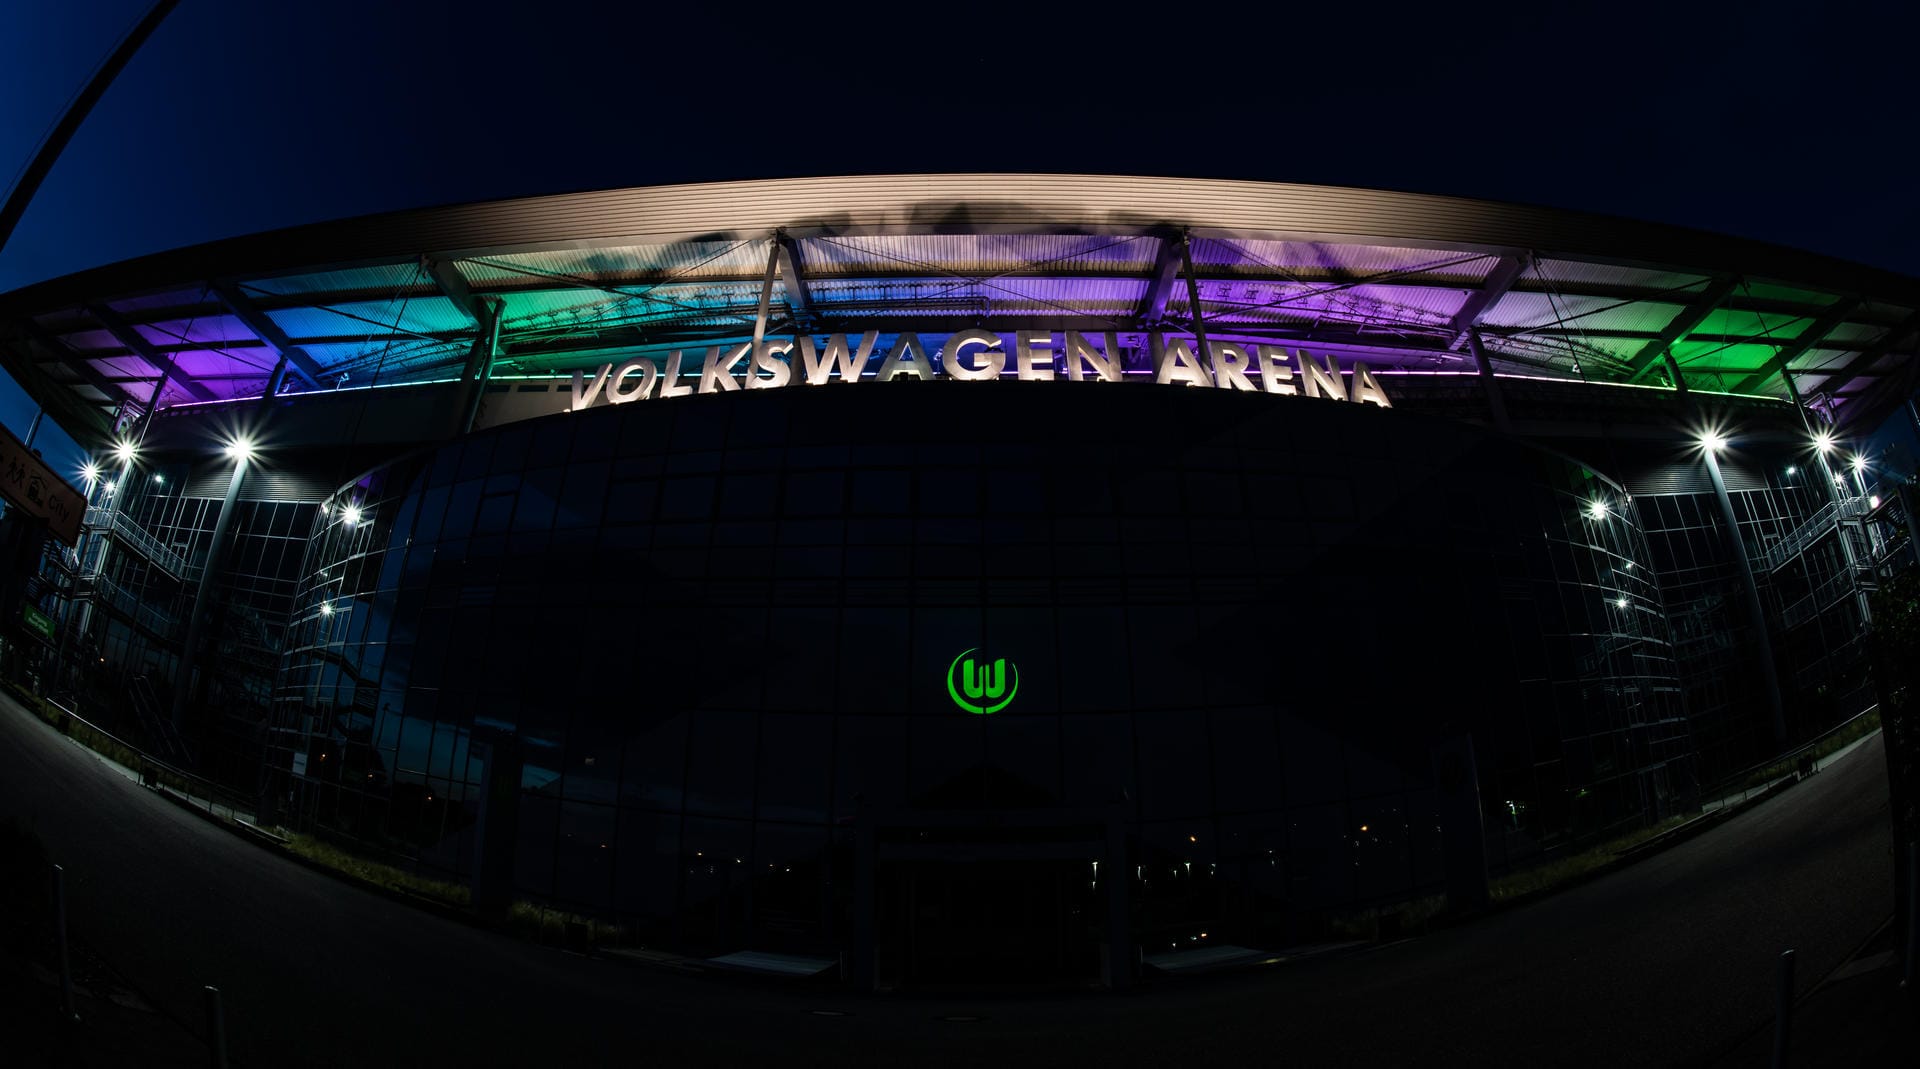 Die Volkswagen-Arena in Wolfsburg ist während des Spiels in Regenbogenfarben beleuchtet.